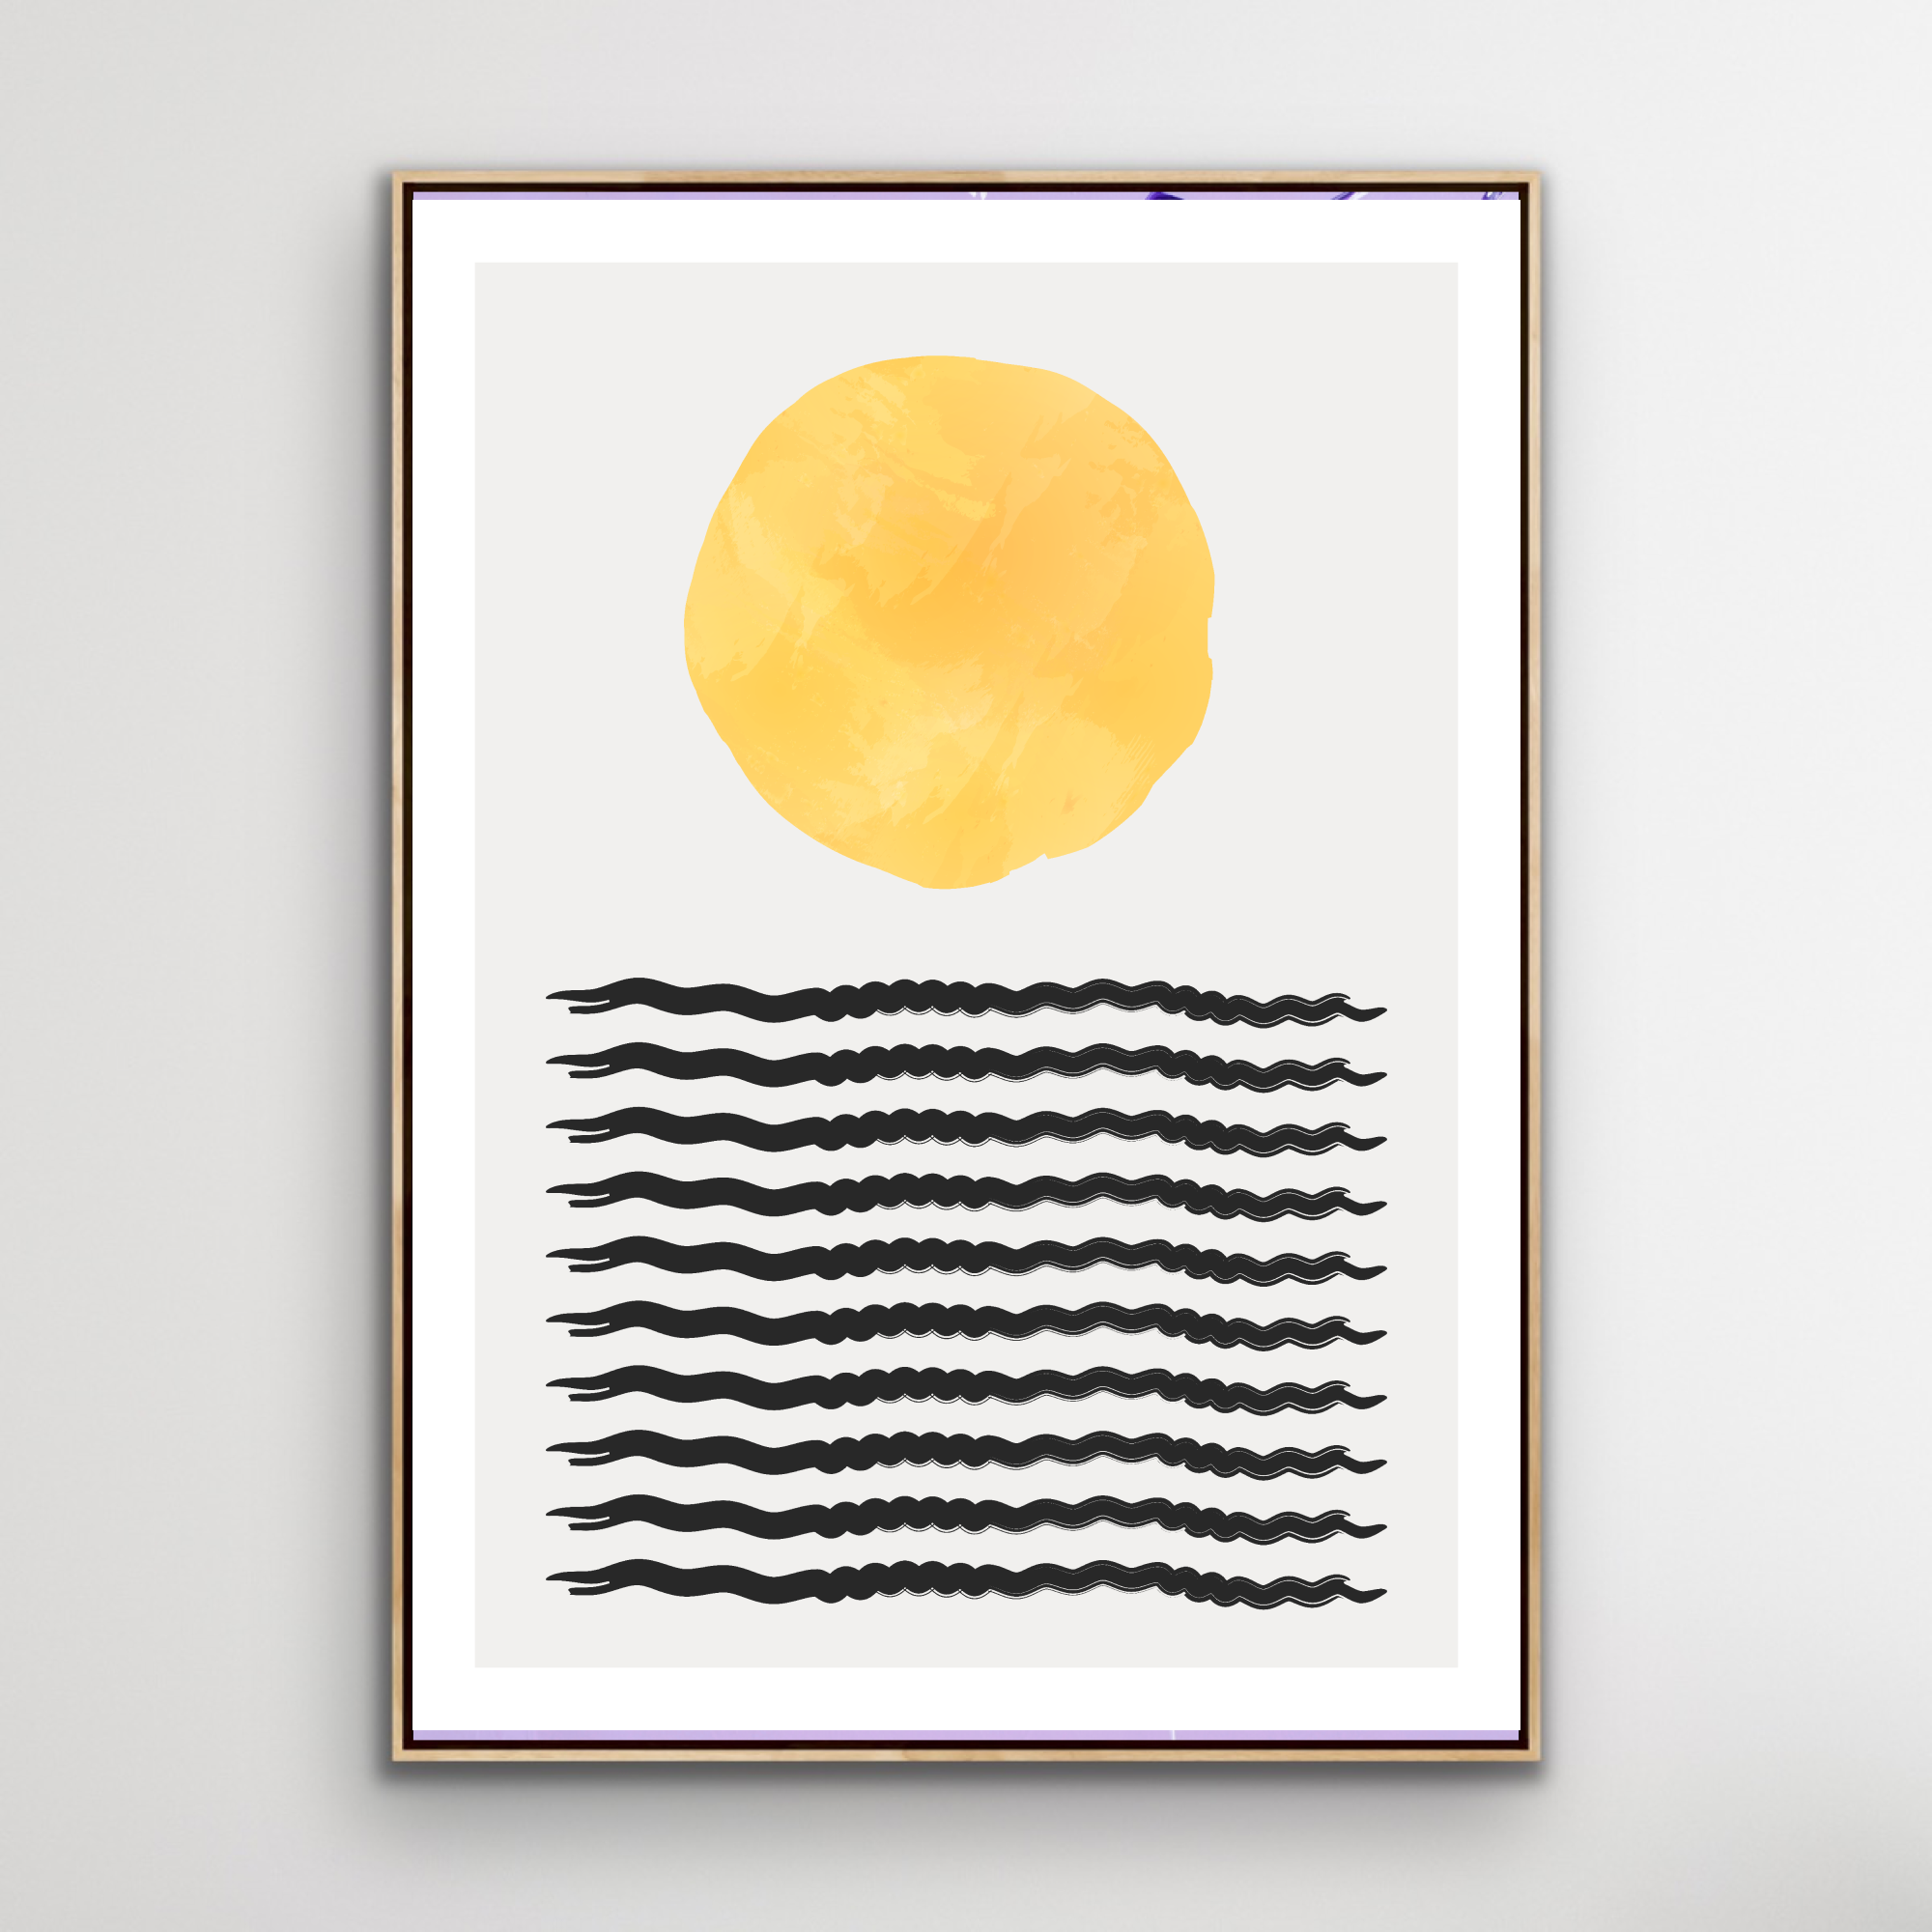 Poster: "Sun Over Sea"